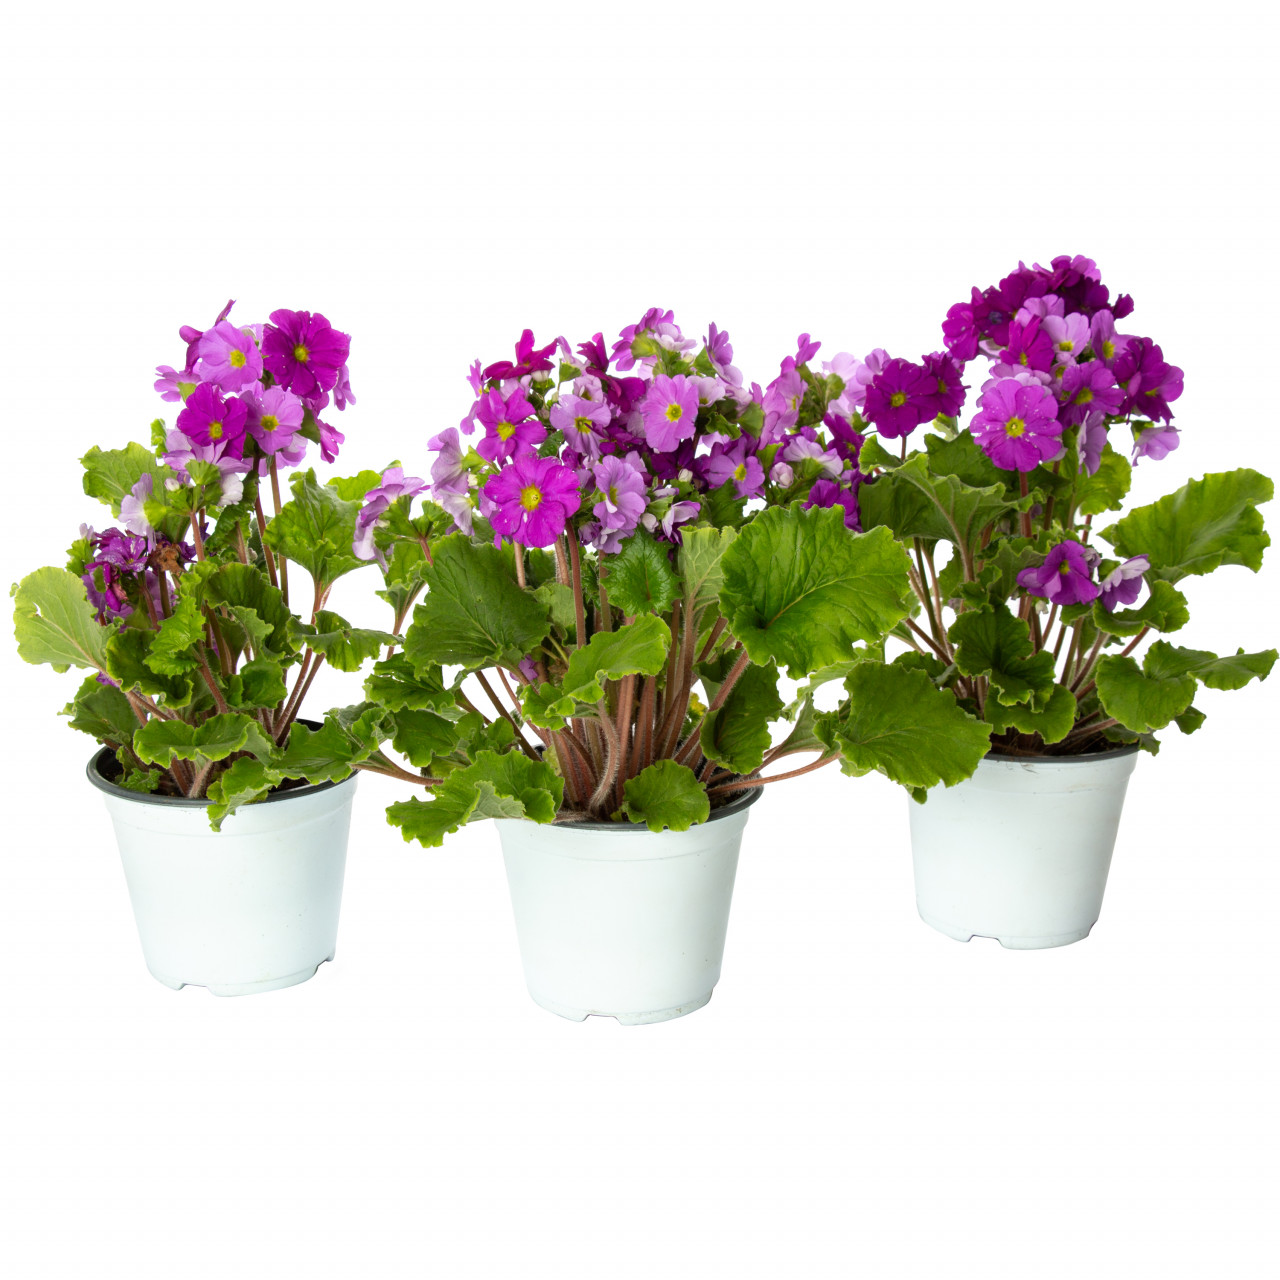 Primula violet, Primula obconica, planta naturala decorativa, in ghiveci P14, 15/25cm